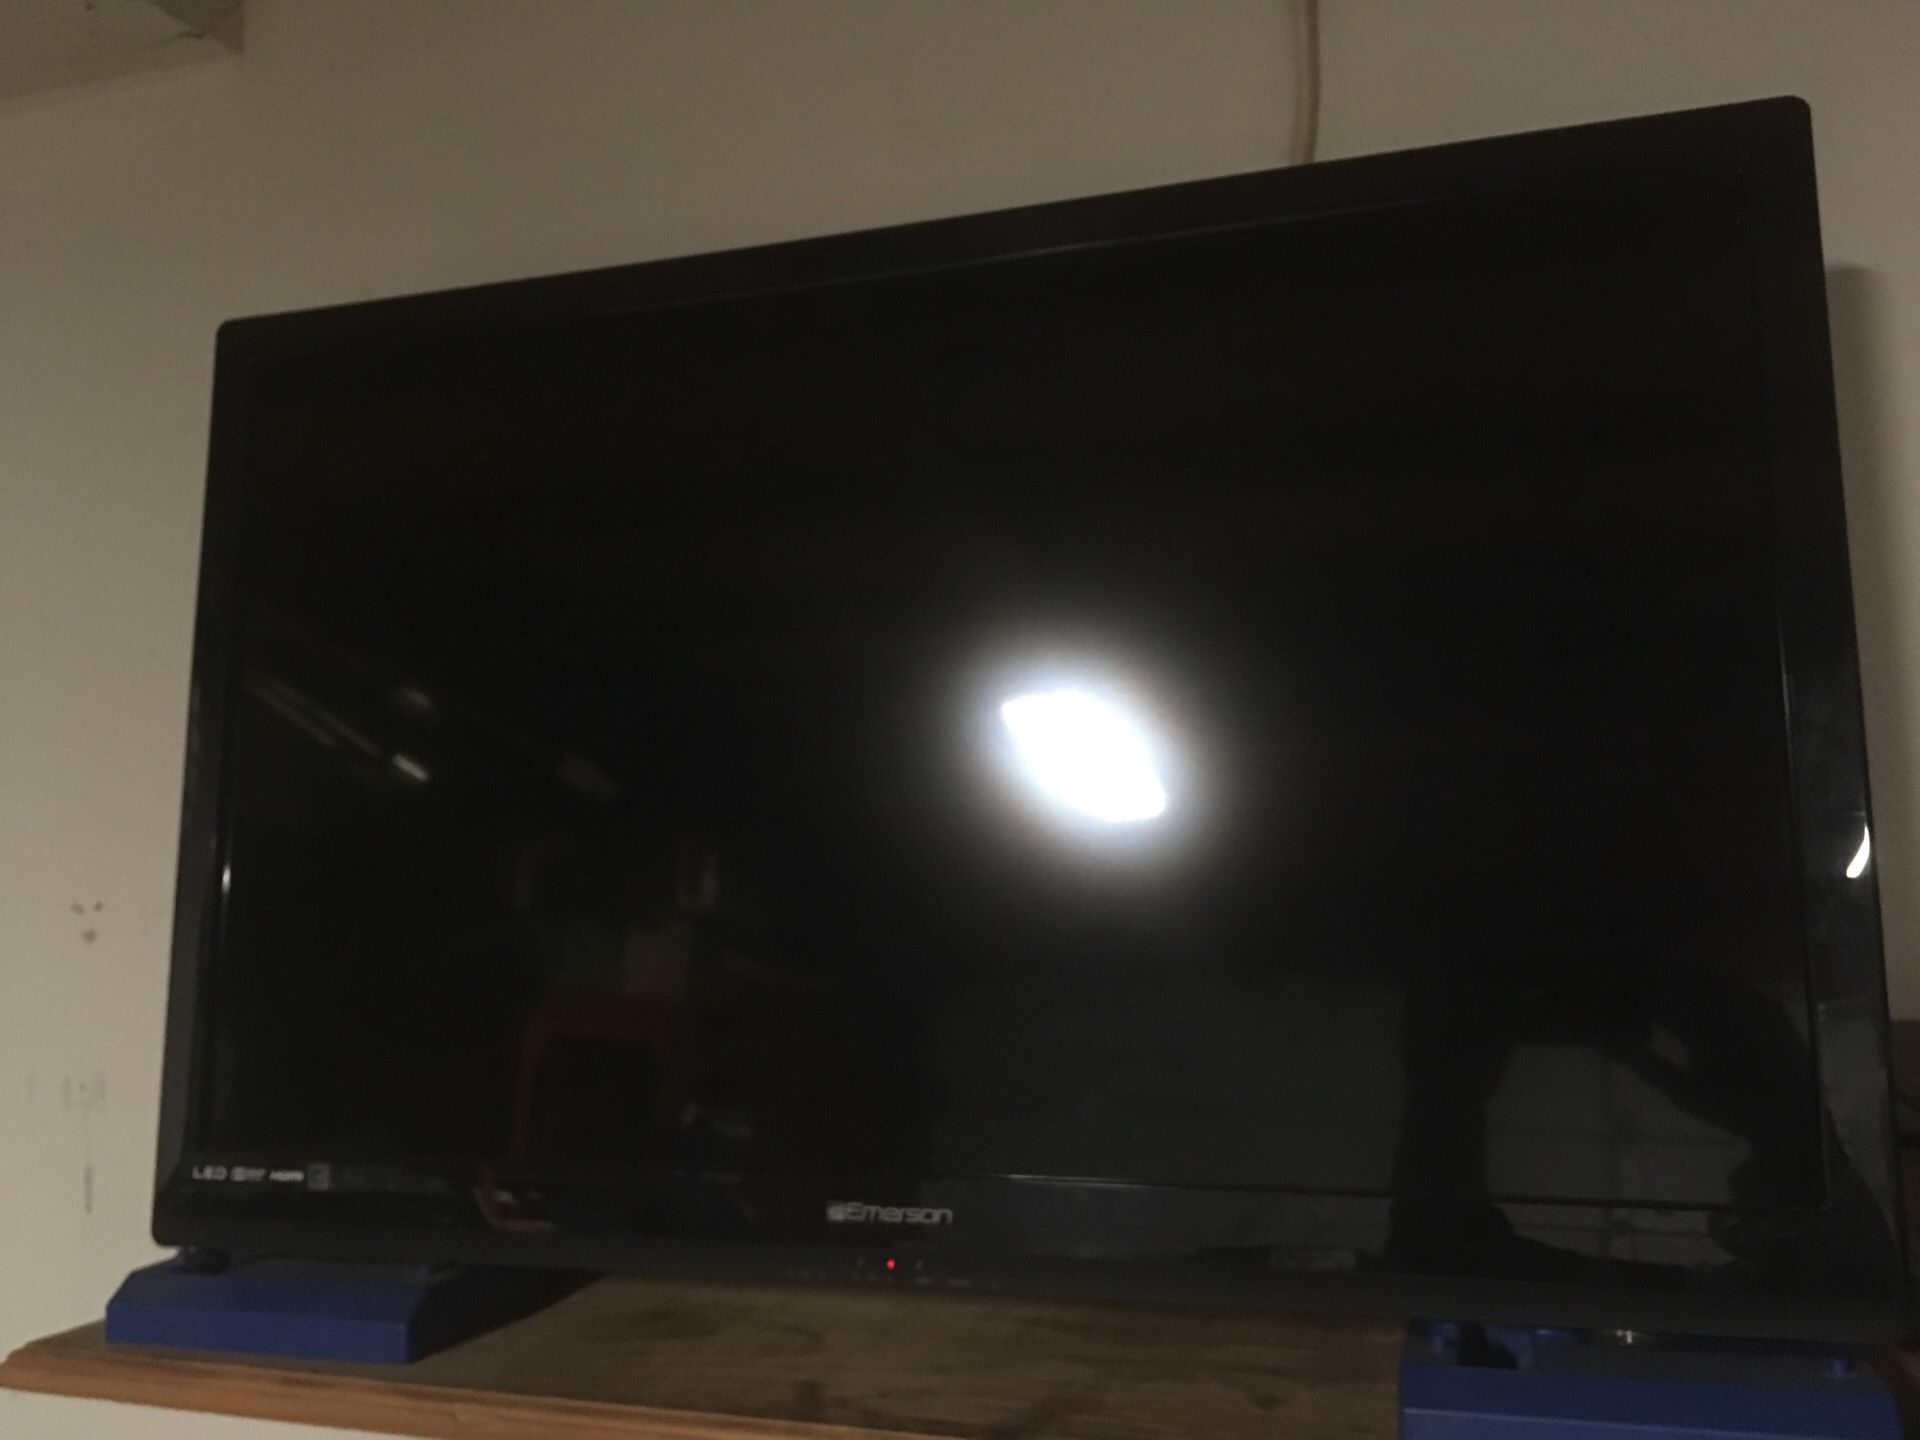 Tv 📺 for sale no remote 32 inch